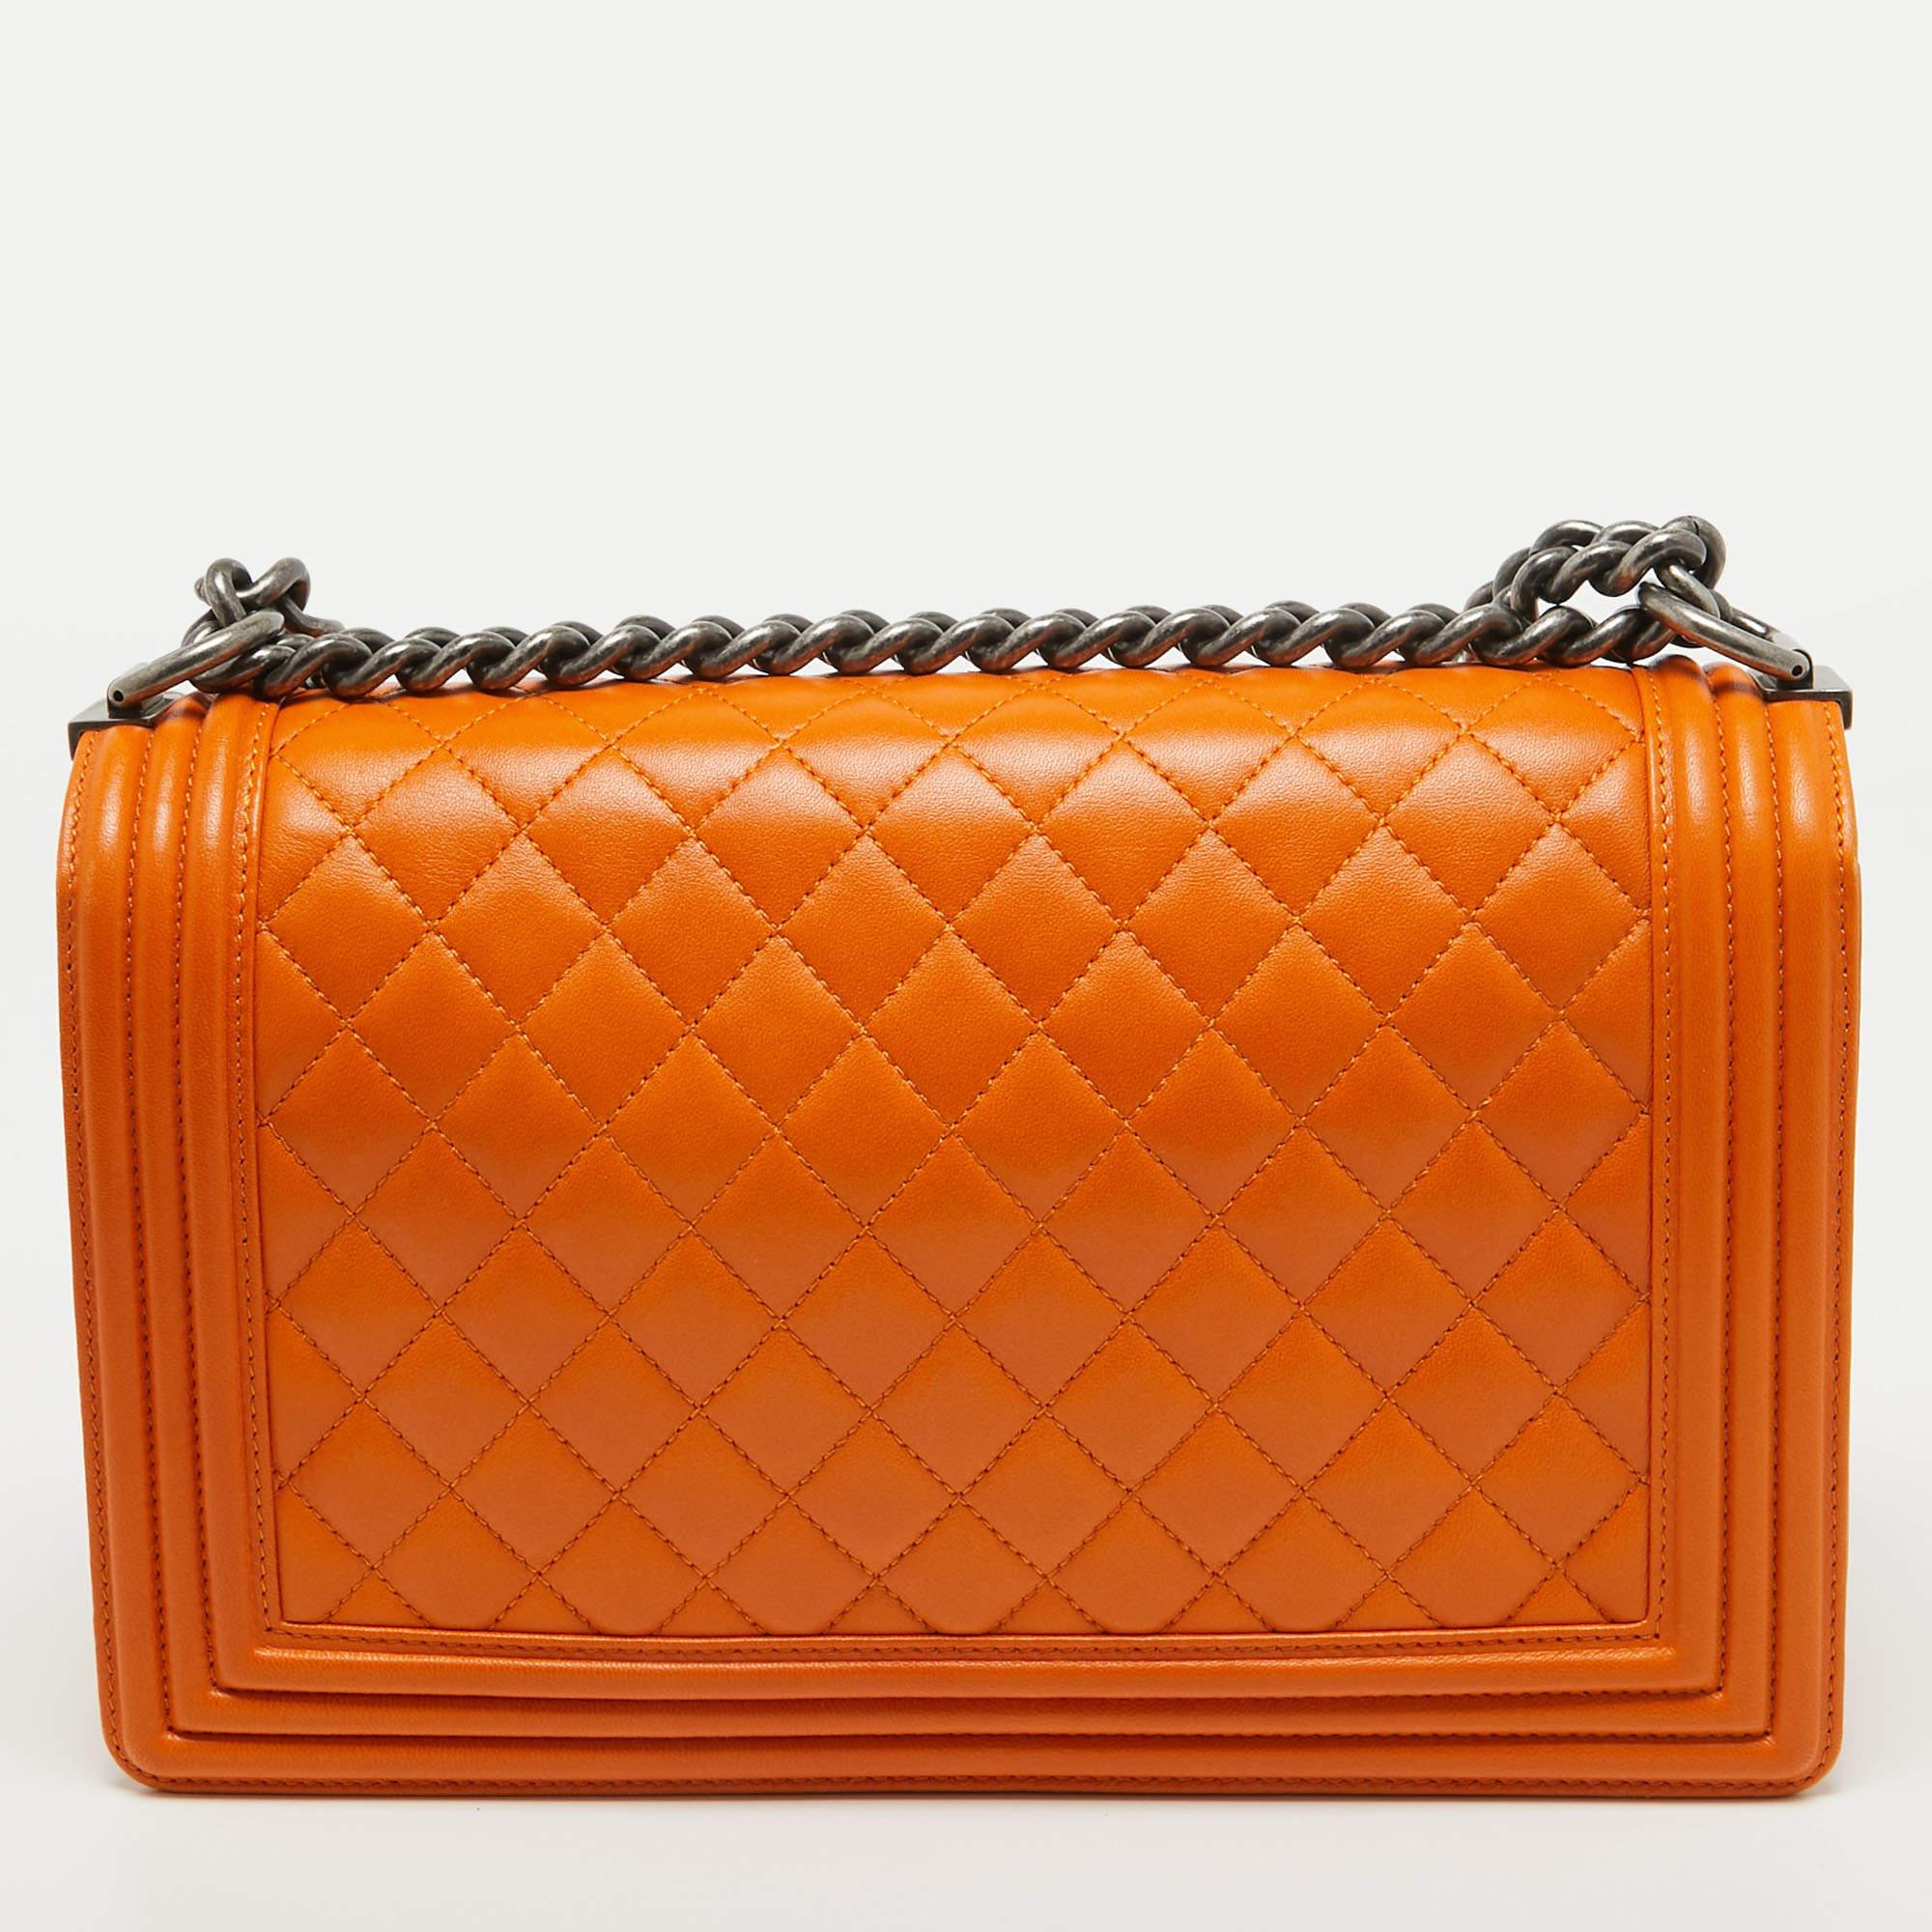 Chanel, sac Boy moyen neuf en cuir matelassé orange 3